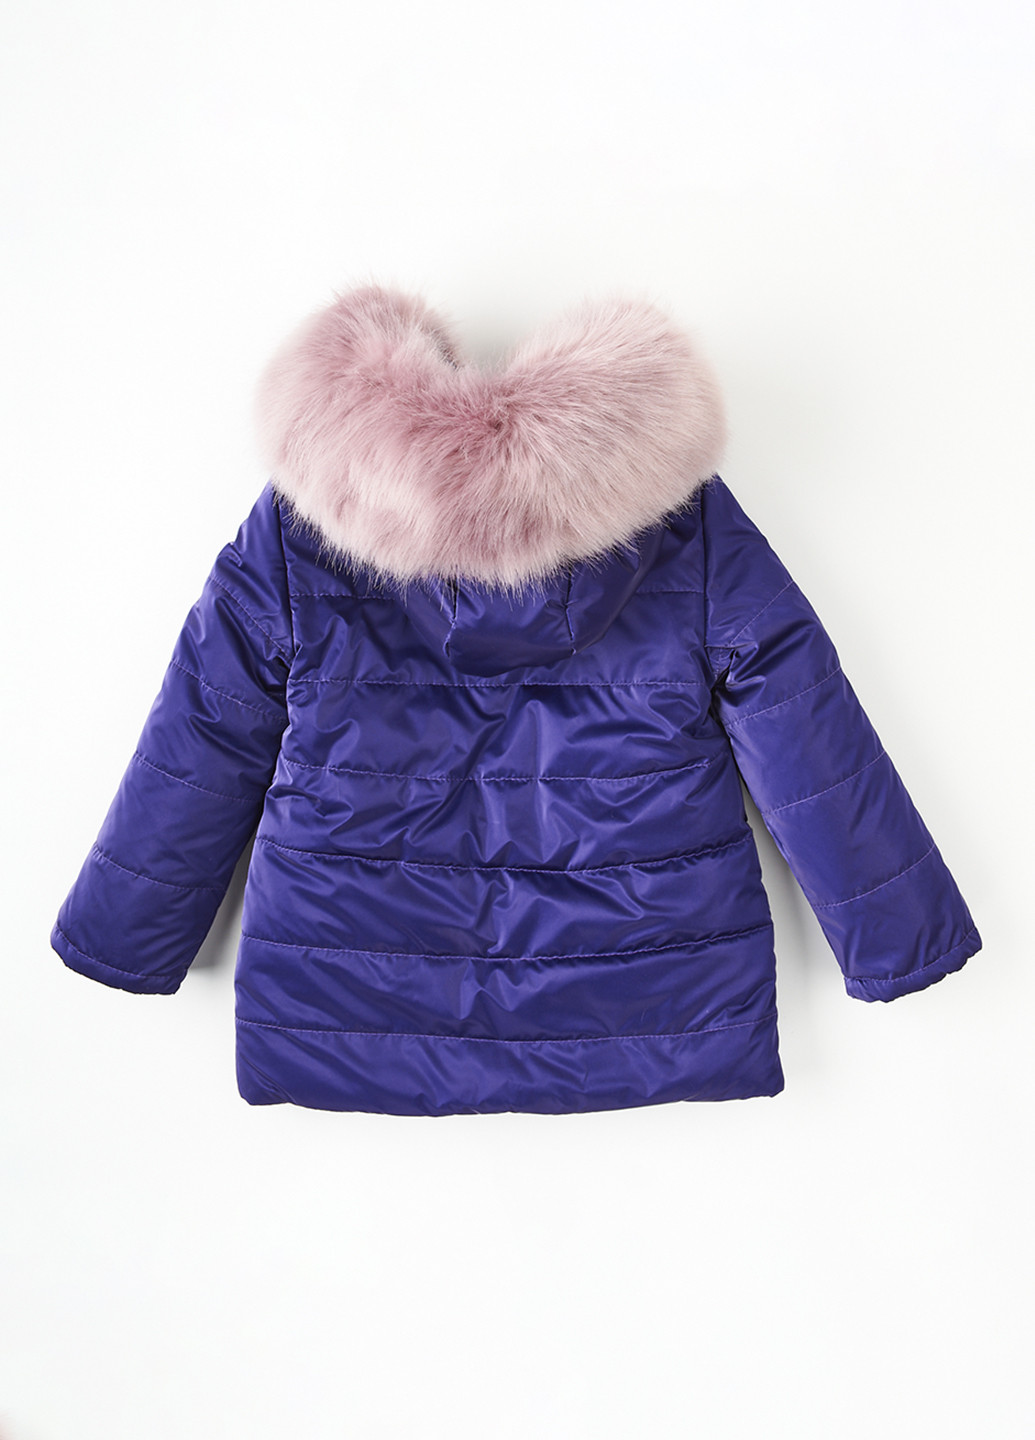 Темно-фіолетова зимня куртка Одягайко